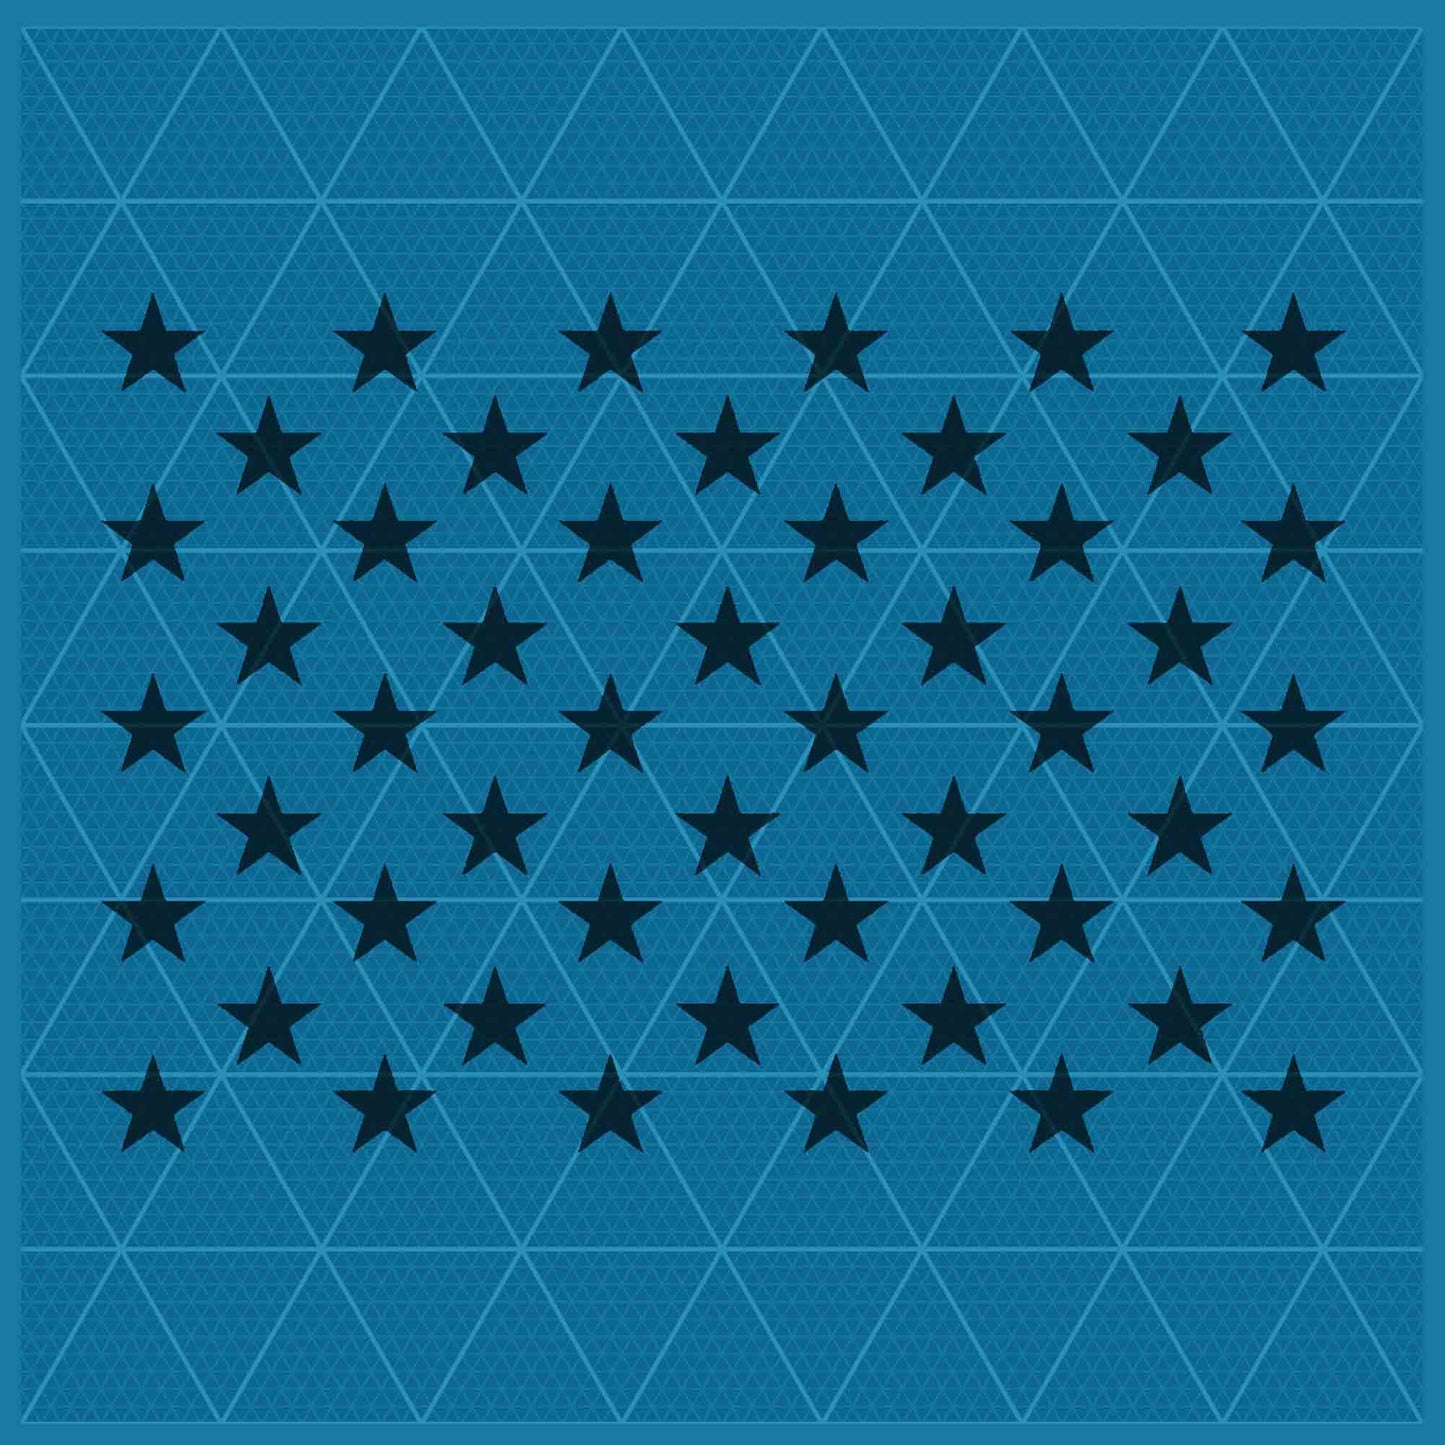 50 STARS STENCIL - Lazy Stencils